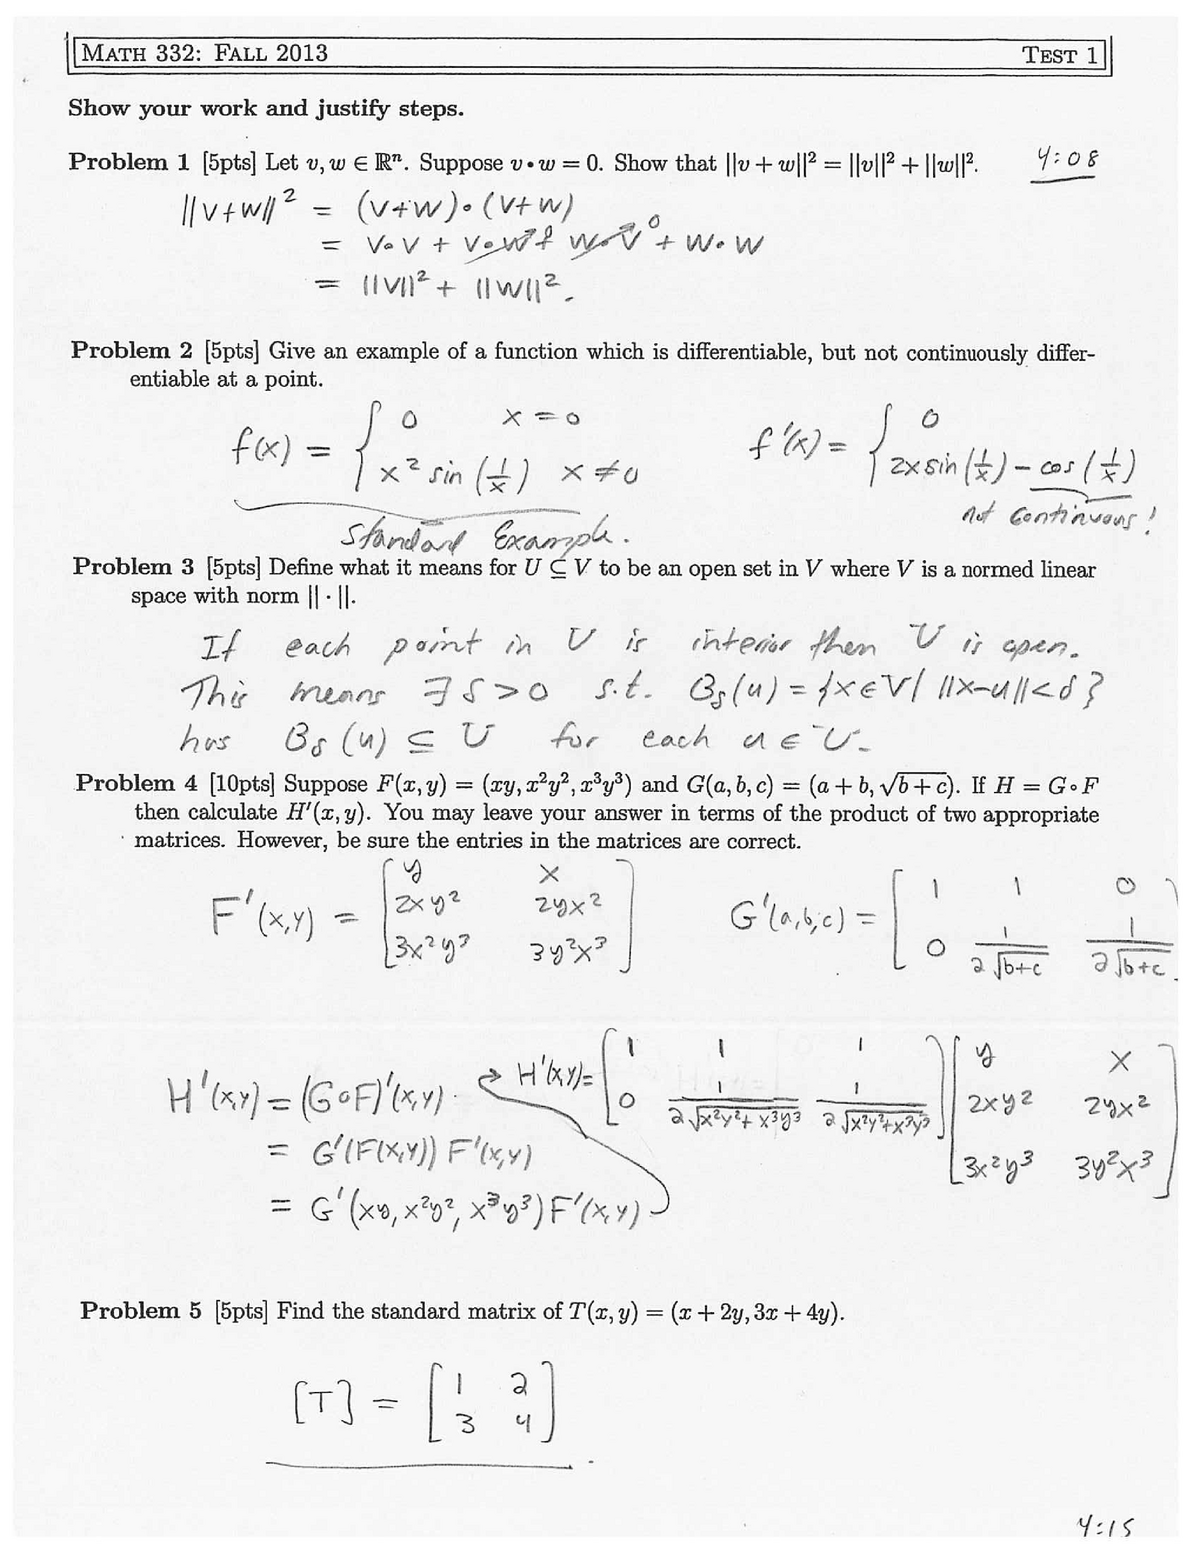 bc calculus exam format